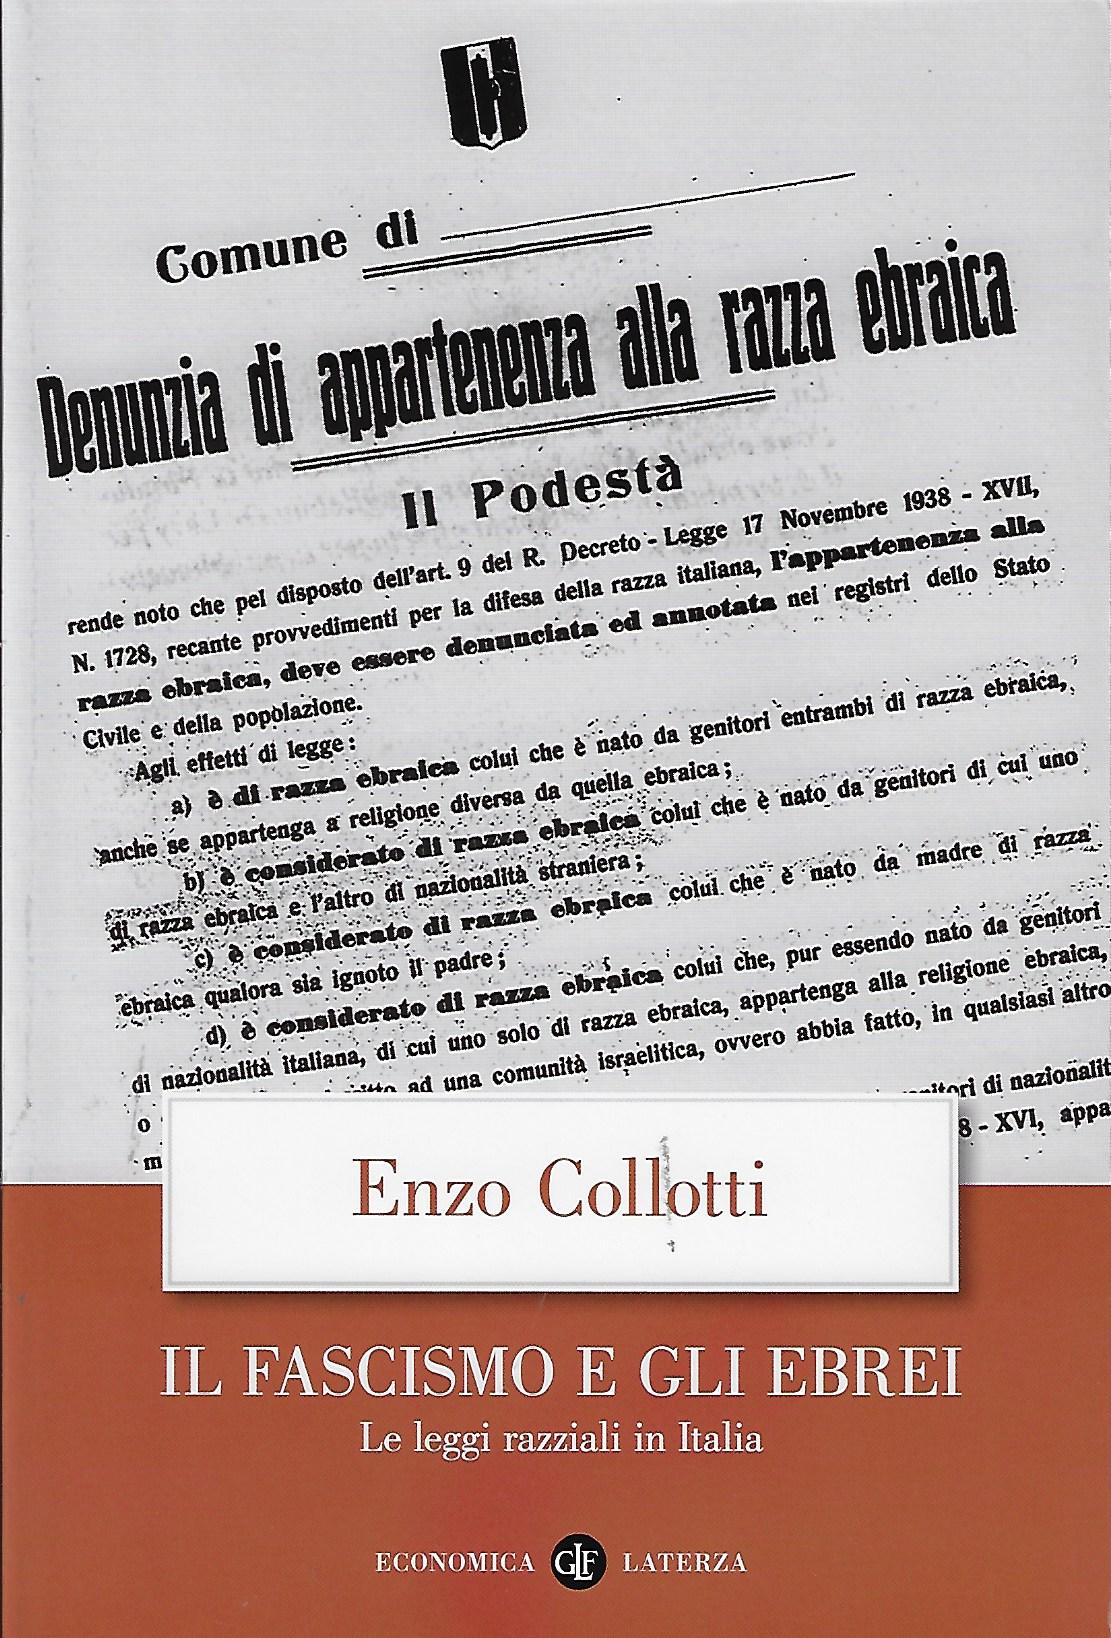 Il fascismo e gli ebrei : le leggi razziali in Italia / Enzo Collotti